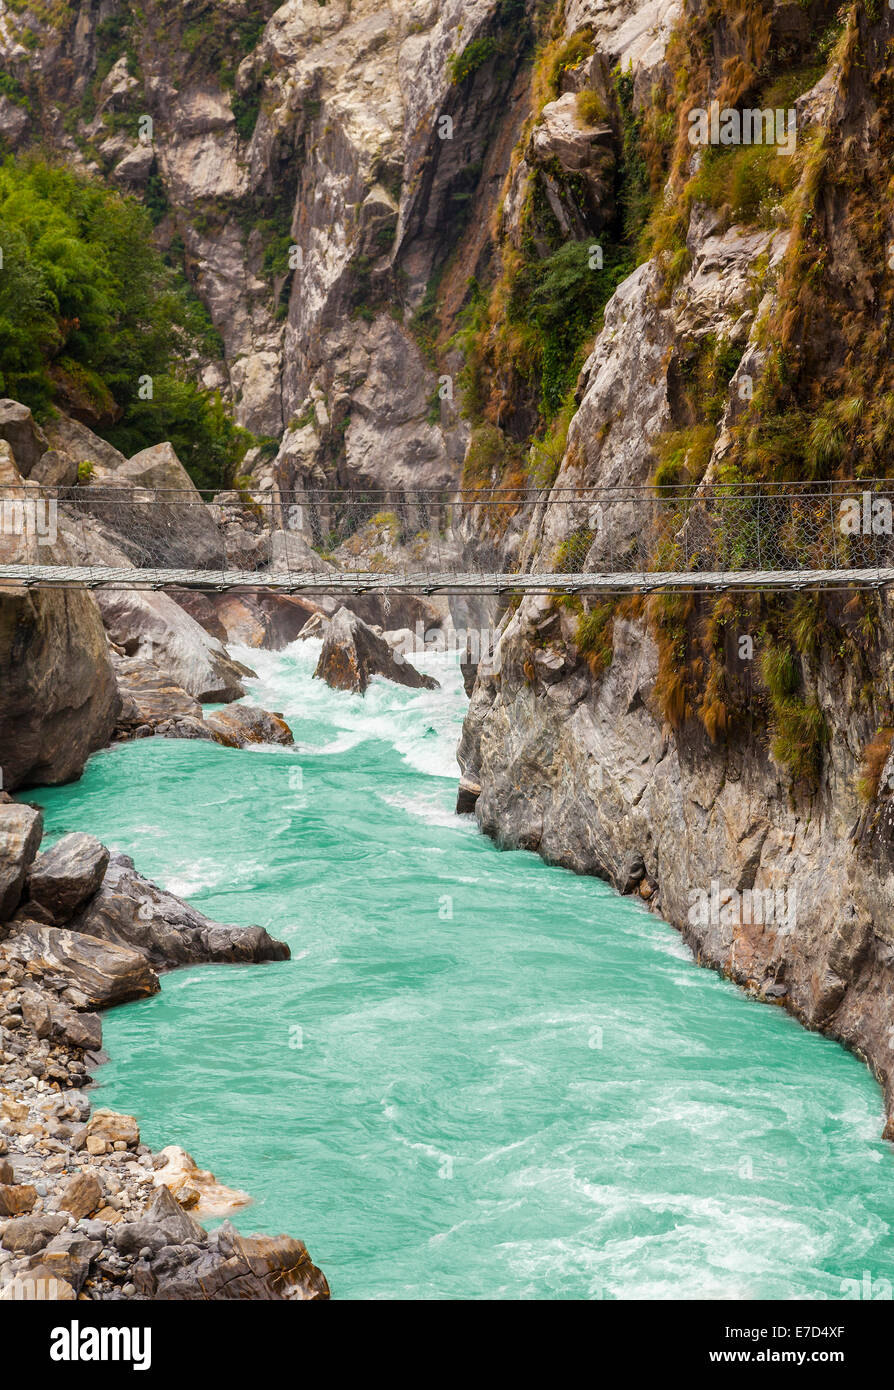 Hanging suspension bridge in Himalaya mountains, Nepal. Stock Photo